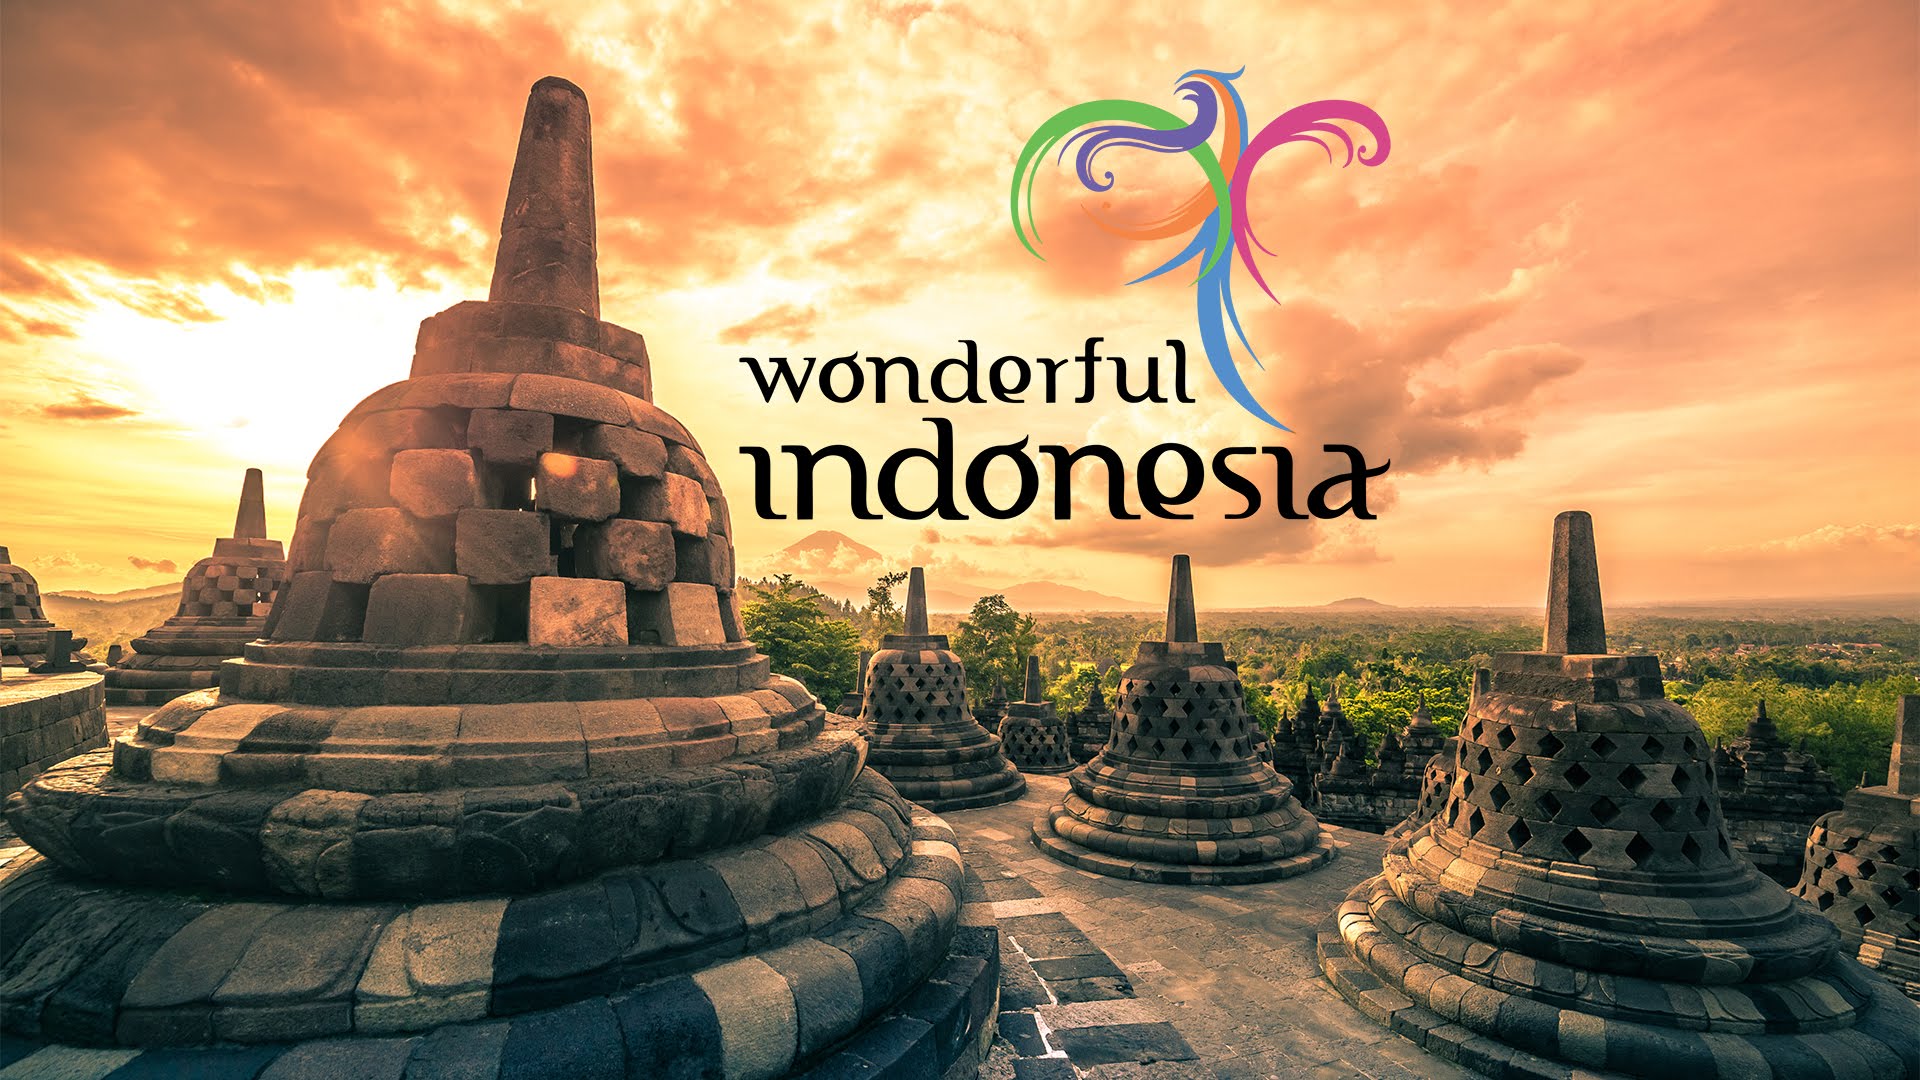 penghargaan wonderful indonesia